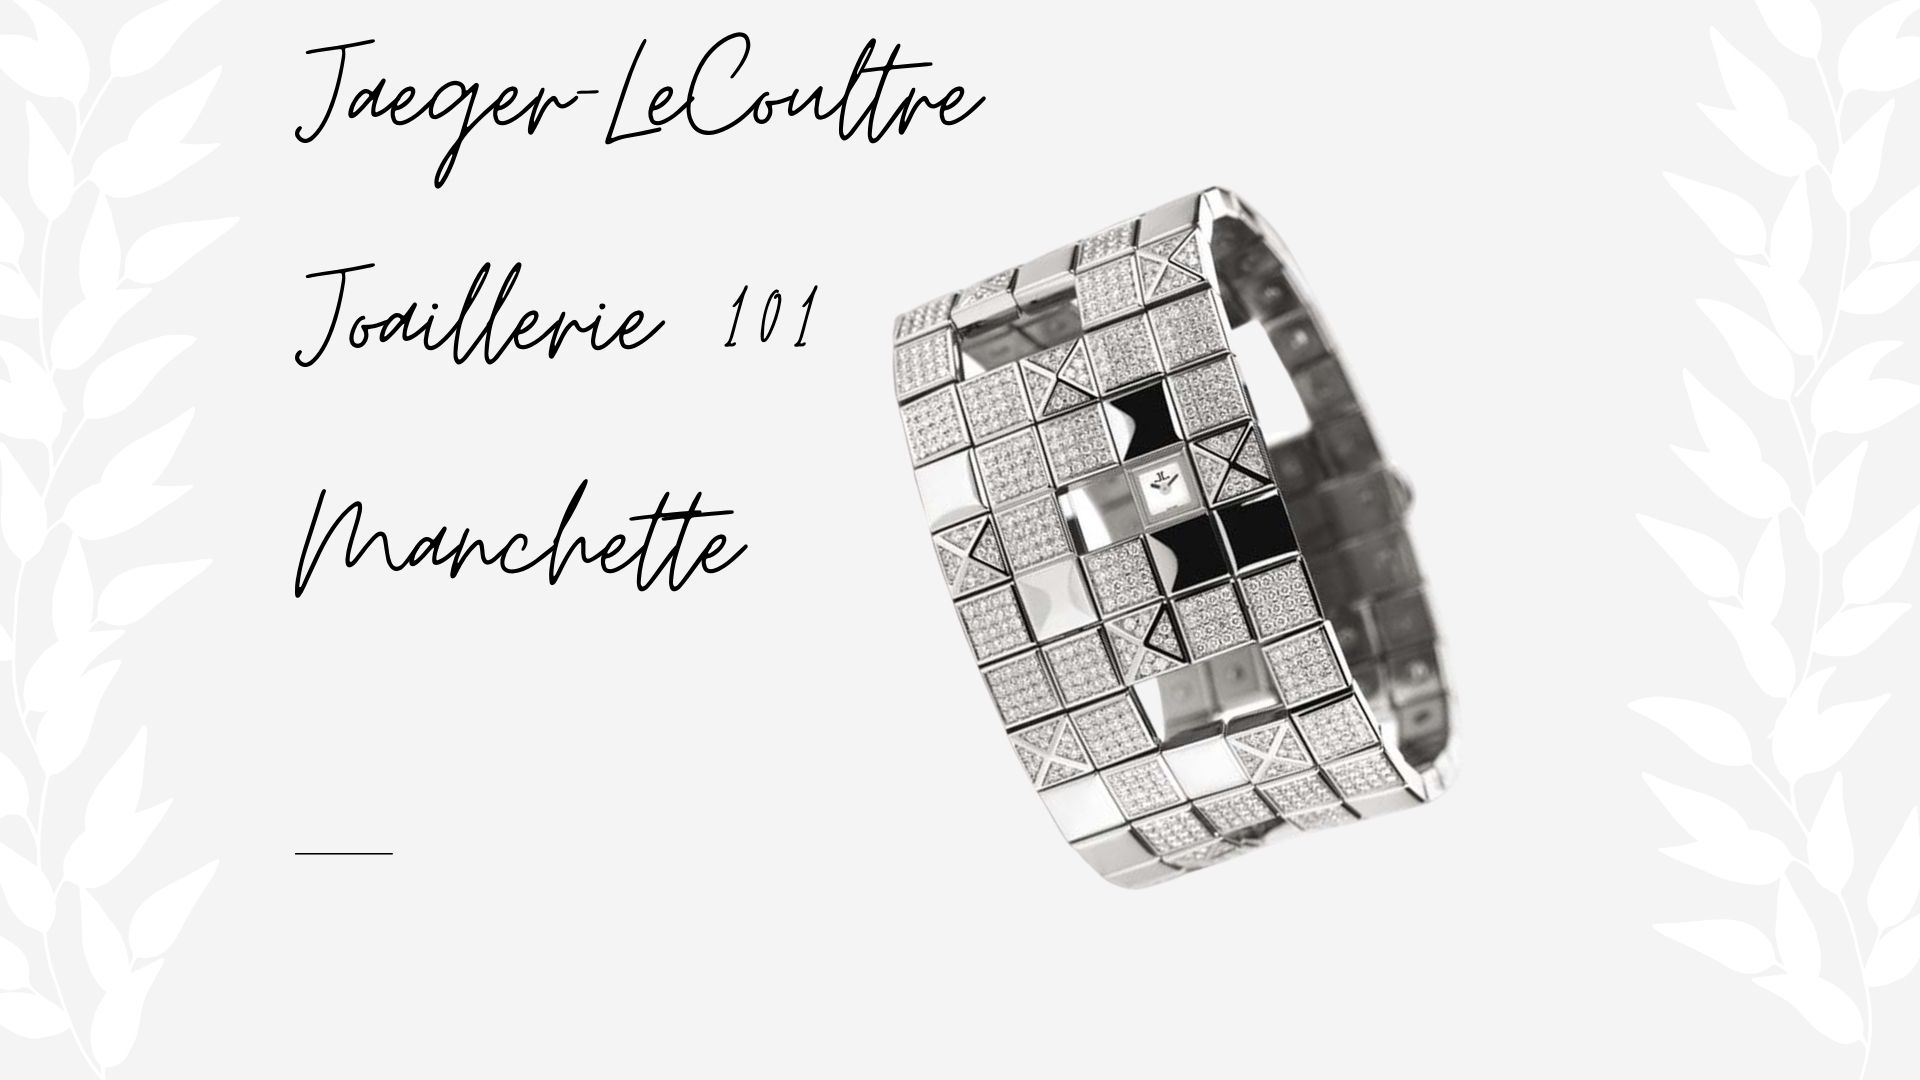 นาฬิกาที่แพงที่สุดในโลก - Jaeger-LeCoultre Joaillerie 101 Manchette